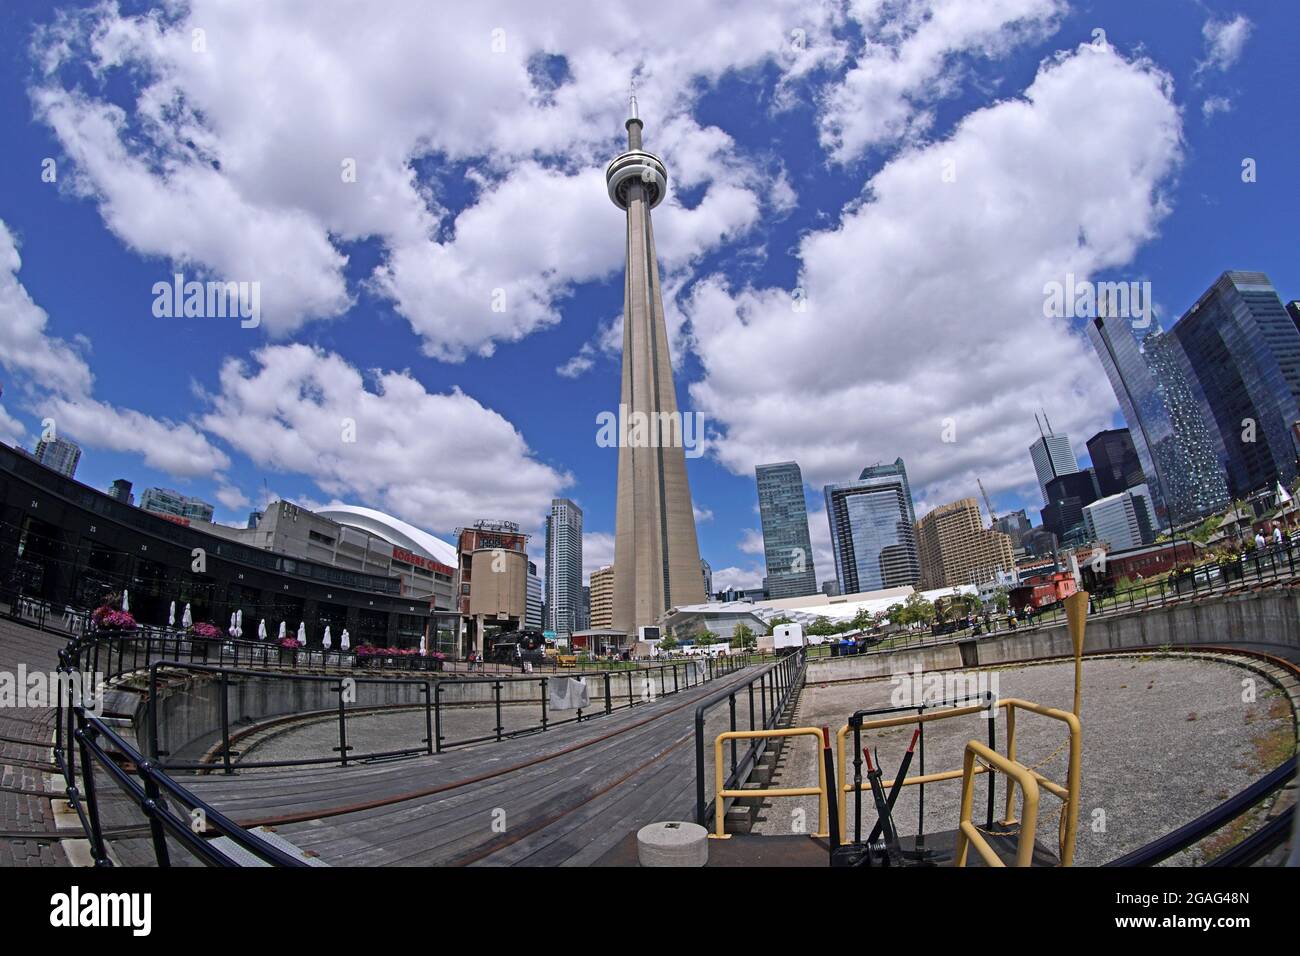 Toronto, Canadá - 30 de julio de 2021: Un antiguo patio de ferrocarril en el centro de Toronto a los pies de la Torre CN se ha convertido en un museo ferroviario, y el Foto de stock